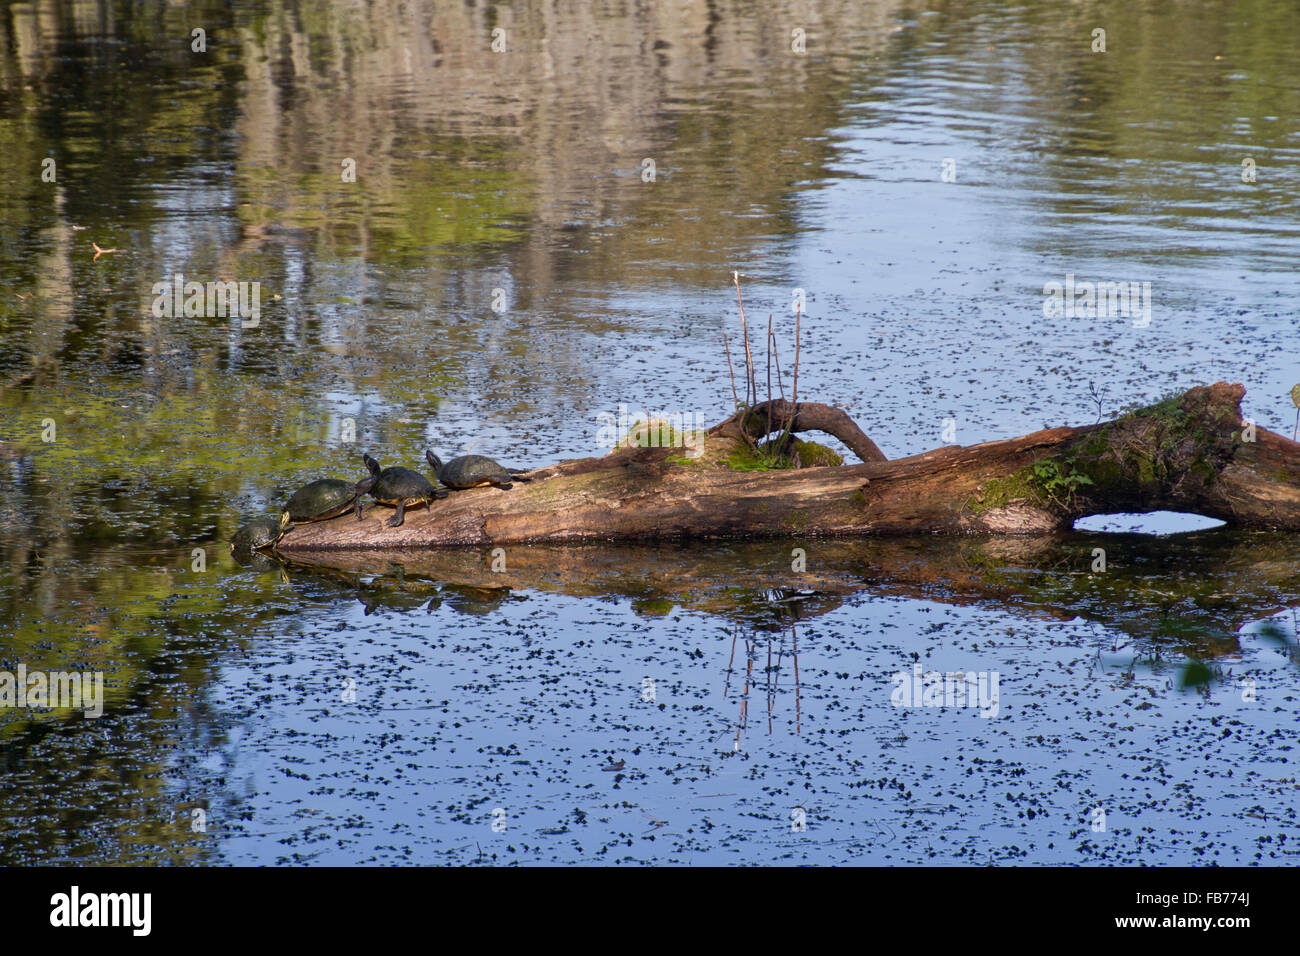 Tres tortugas descansan sobre un antiguo registro de caídos medio sumergida en un estanque, mientras que la cuarta tira a sí mismo fuera del agua a unirse a ellos Foto de stock